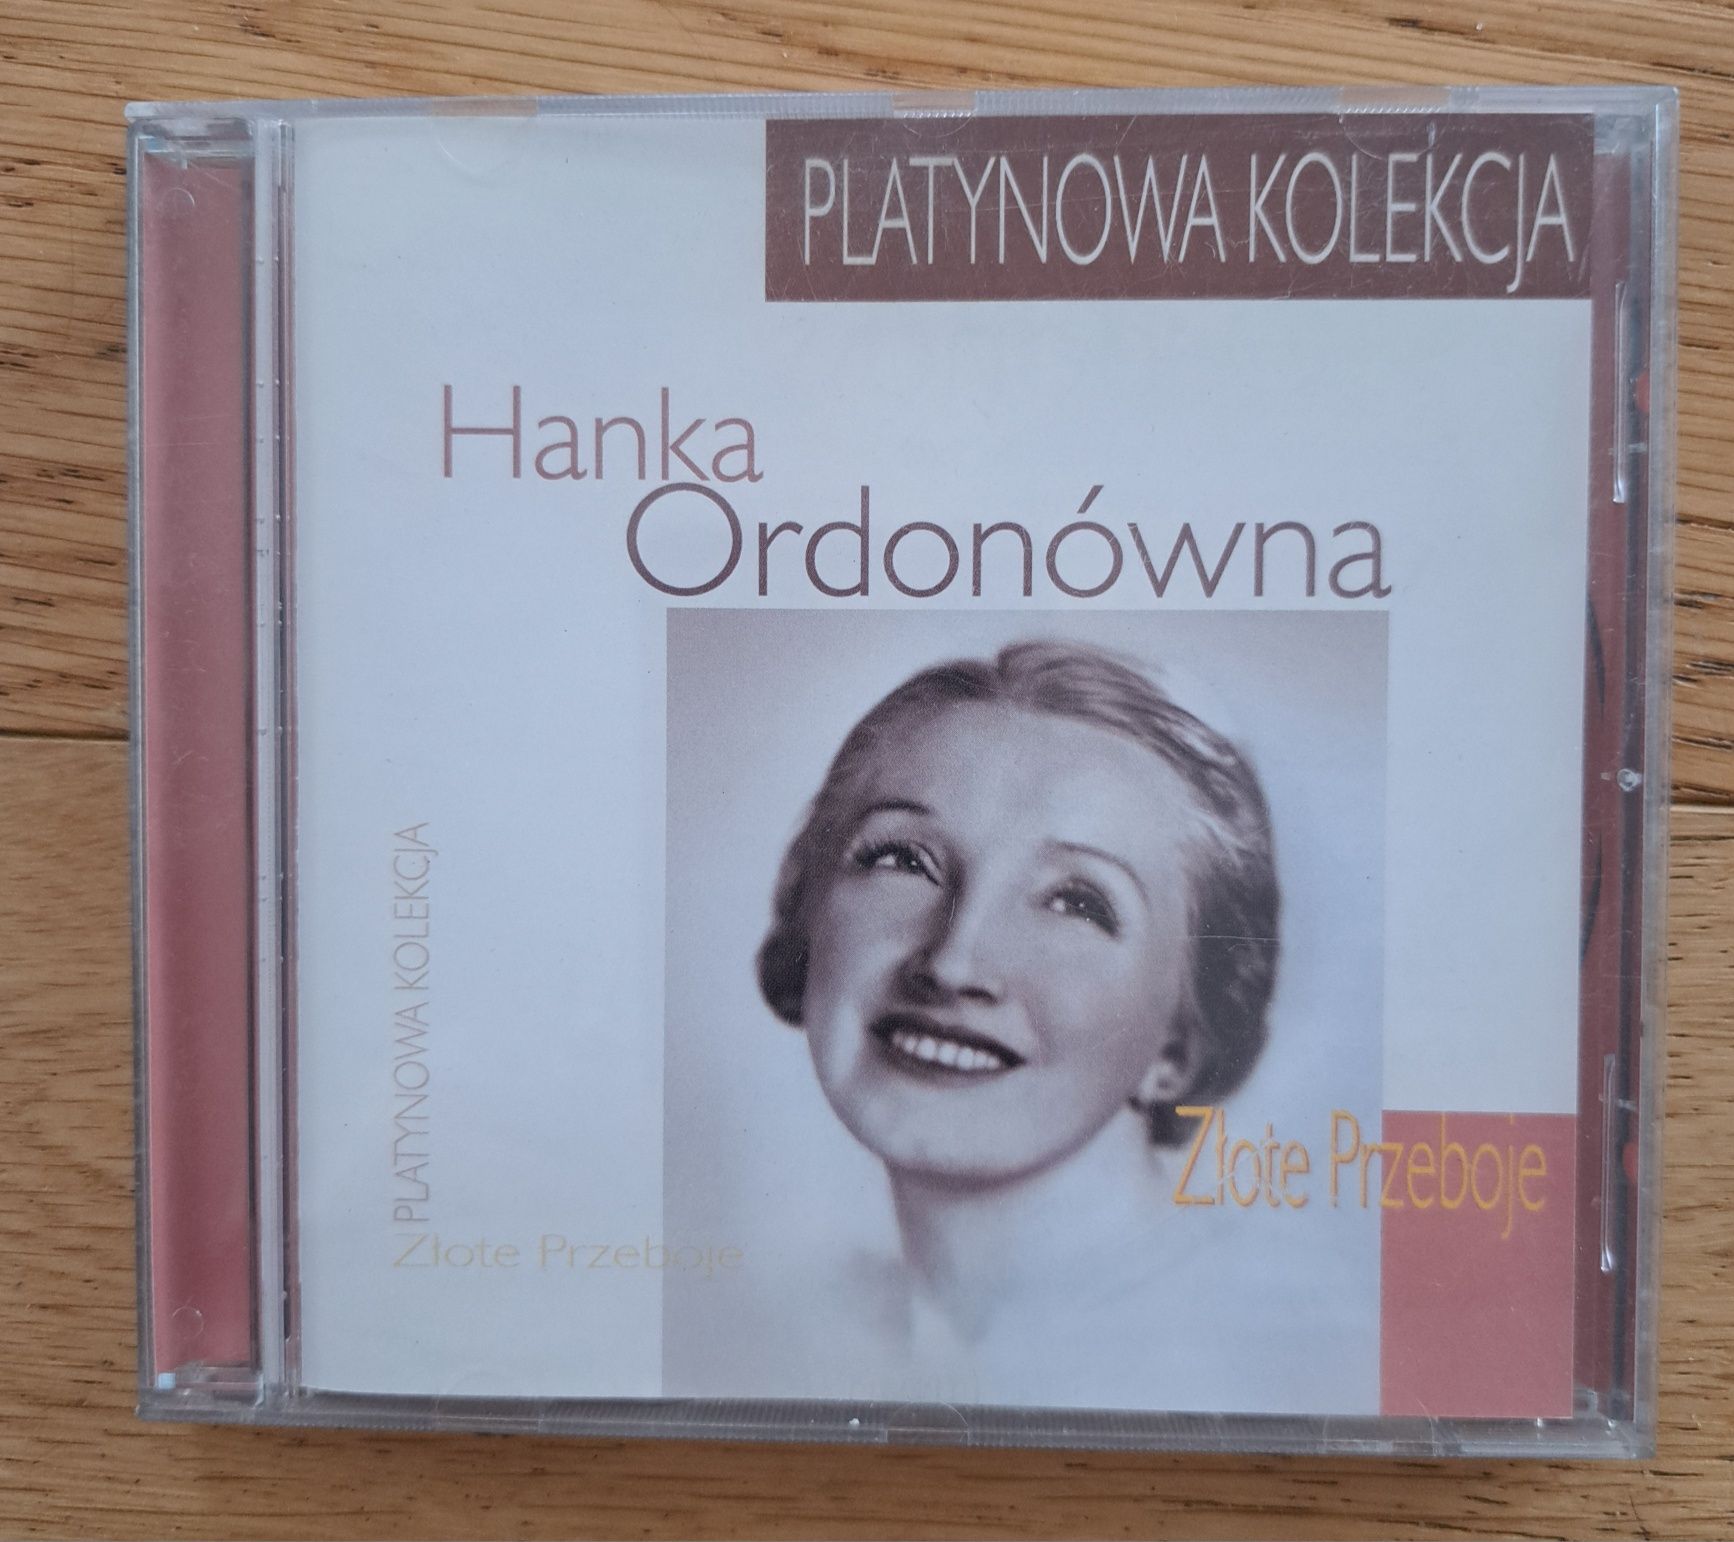 Hanka Ordonówna Złote Przeboje Platynowa kolekcja cd